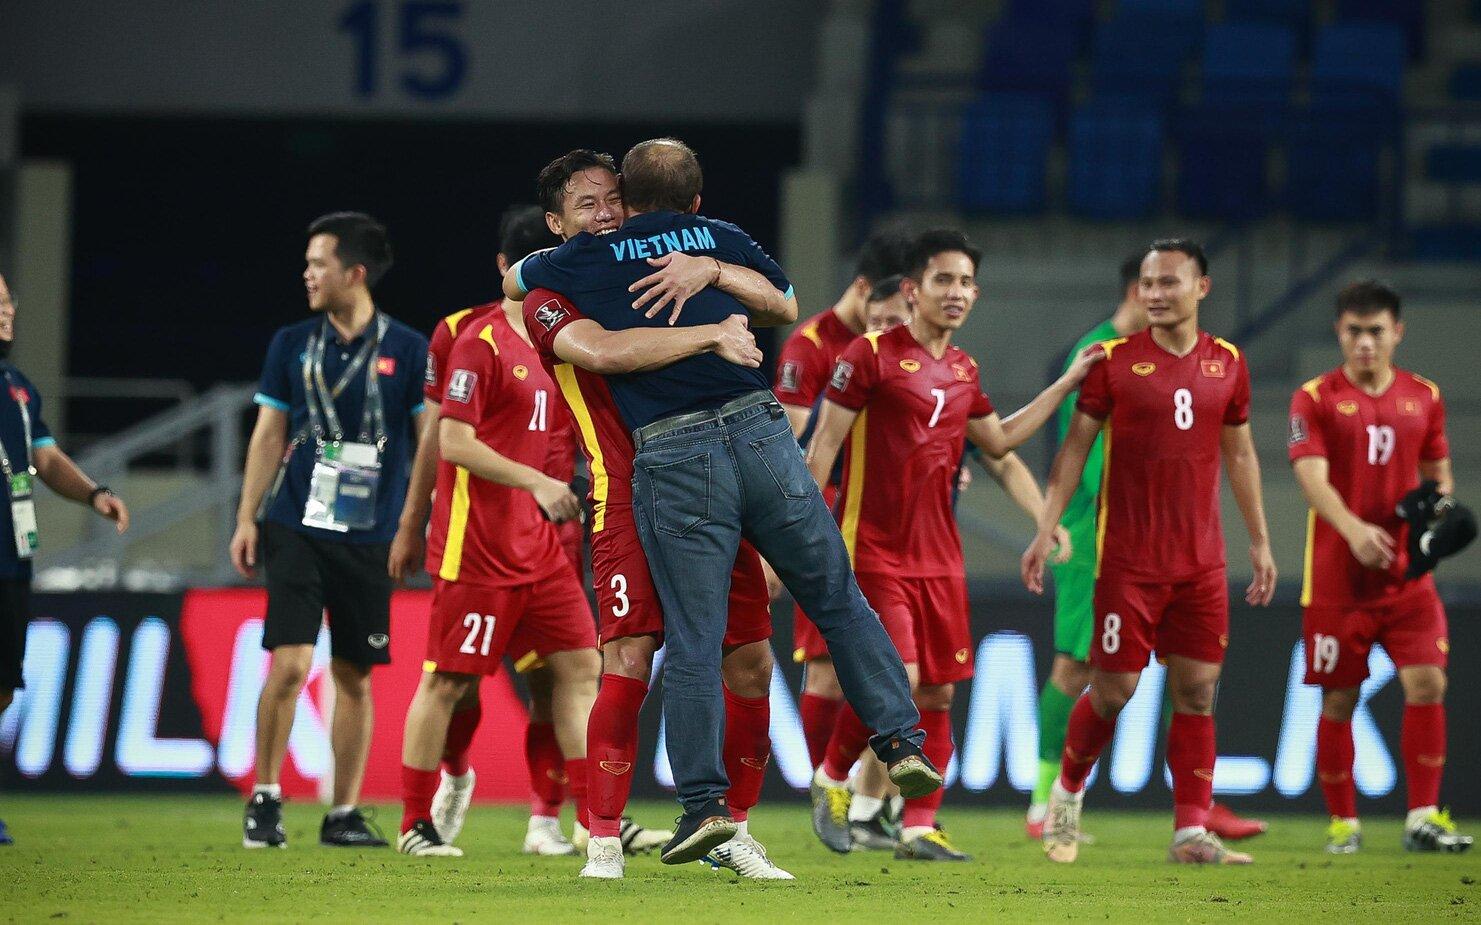 Đội tuyển Việt Nam với những thành công dưới triều đại của HLV Park Hang Seo luôn là đội bóng hàng đầu của Đông Nam Á trên BXH FIFA (Ảnh: Internet)